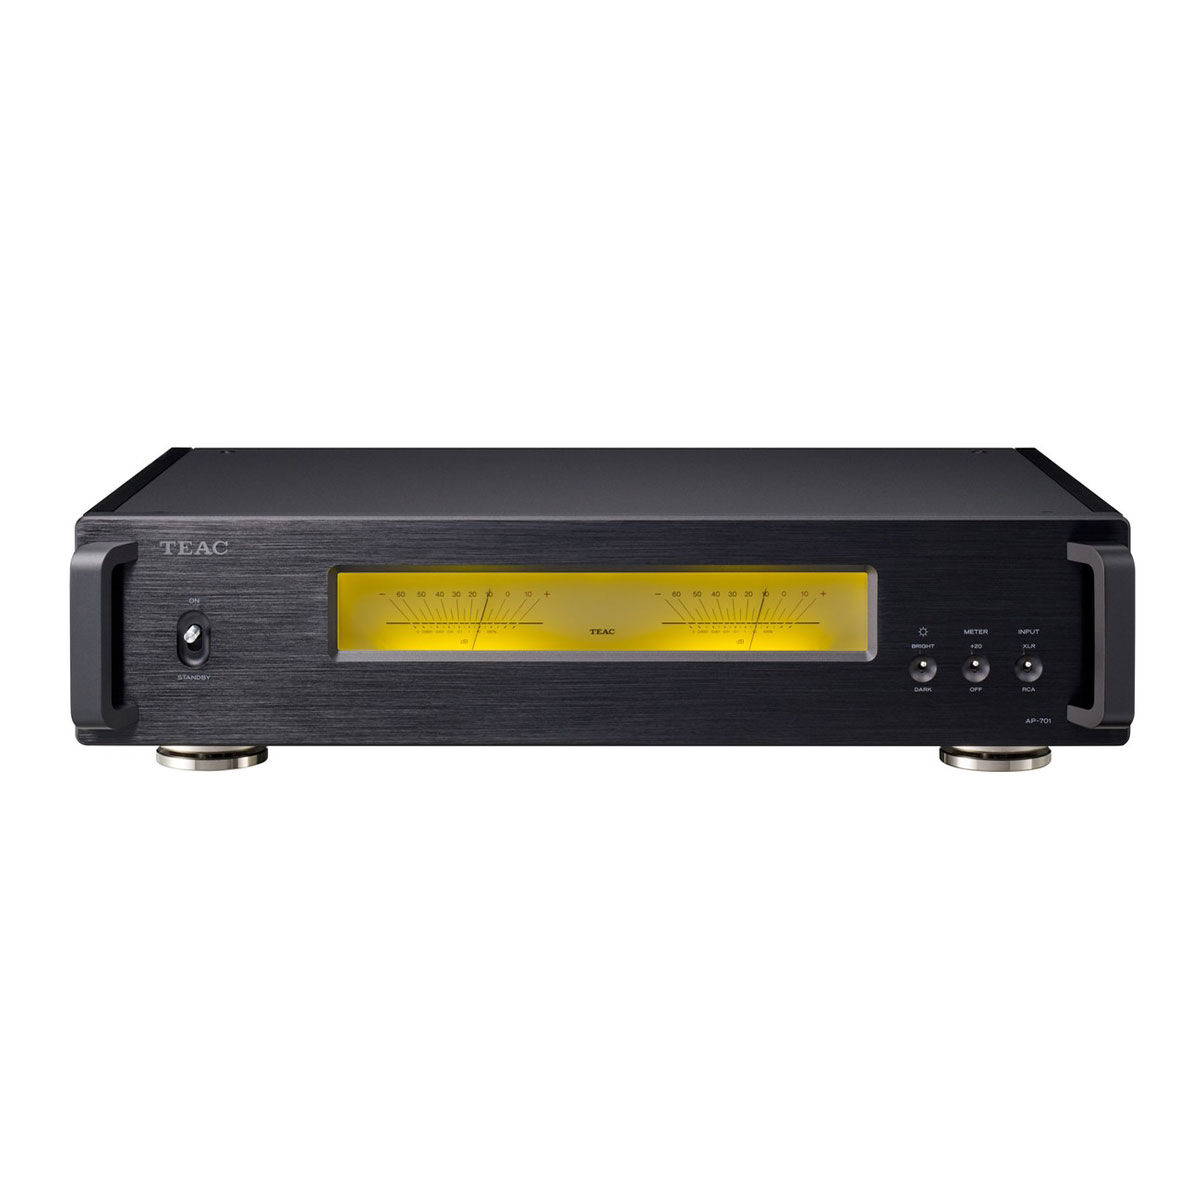 Teac AP-701 Stereo/Mono Amplifier - Black